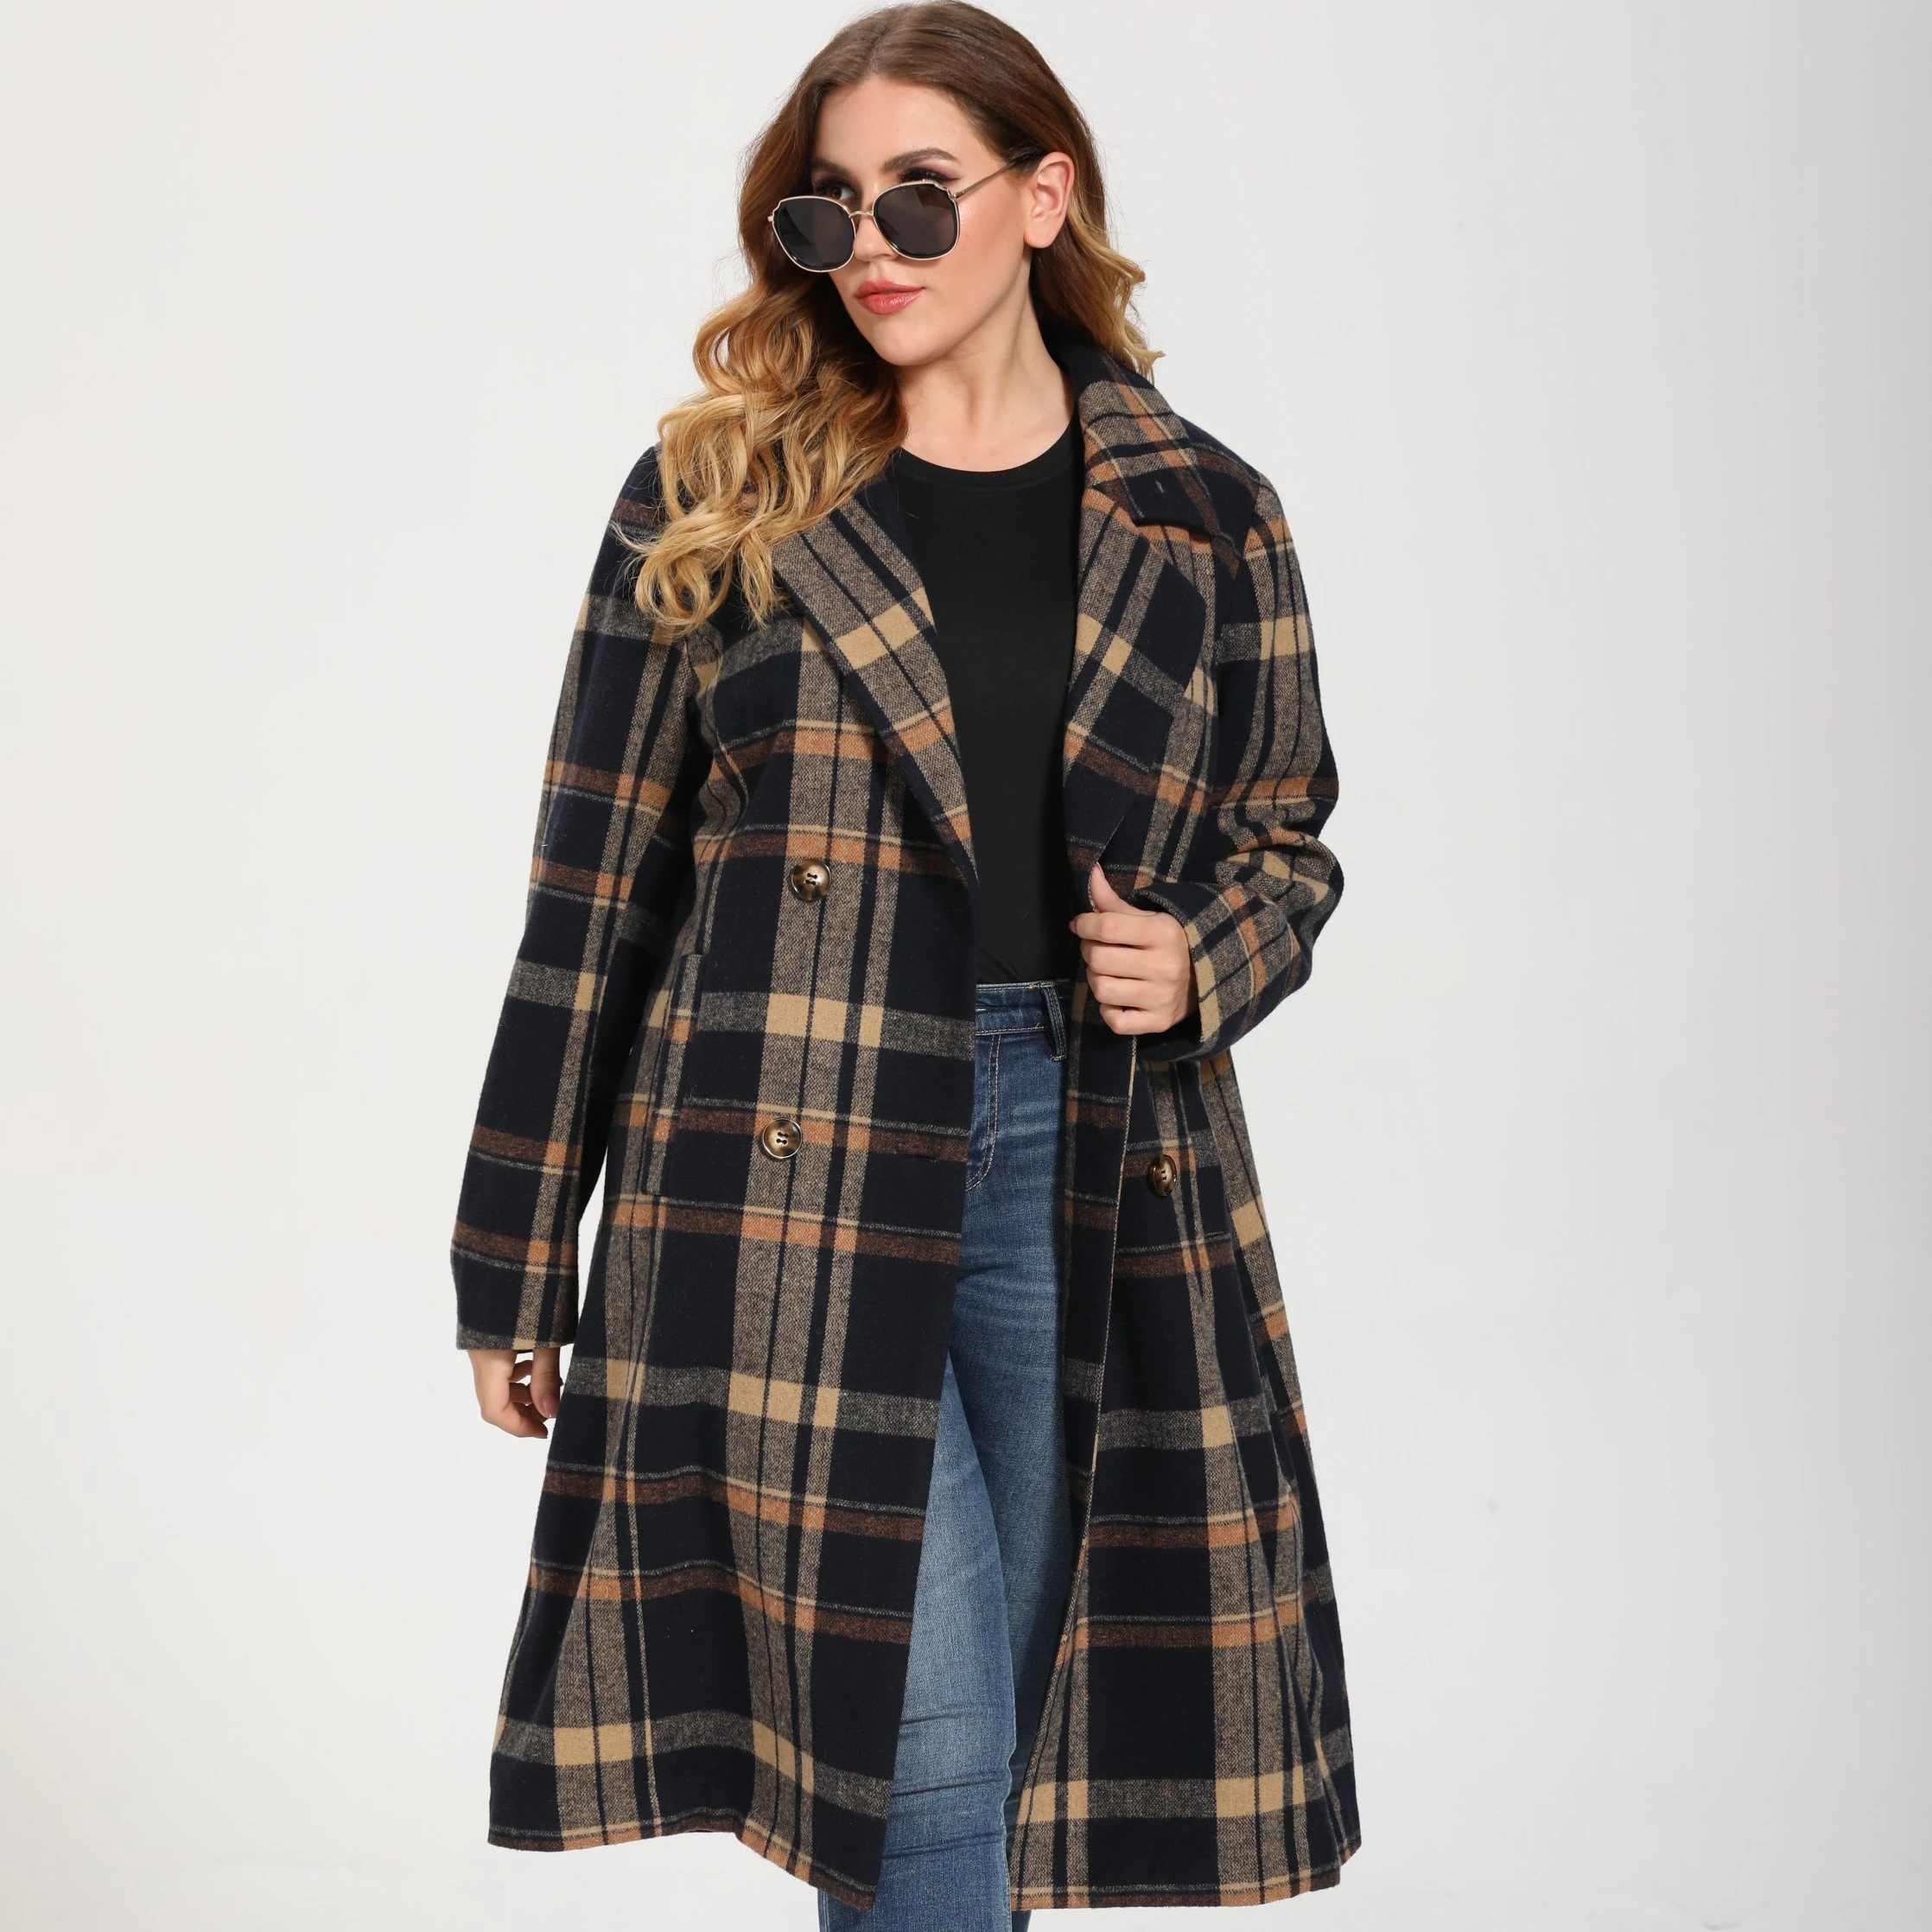 2020 Factory Price New Arrival Woolen Jacket Wear Plaid Frosted Warm Long Women Winter Coat